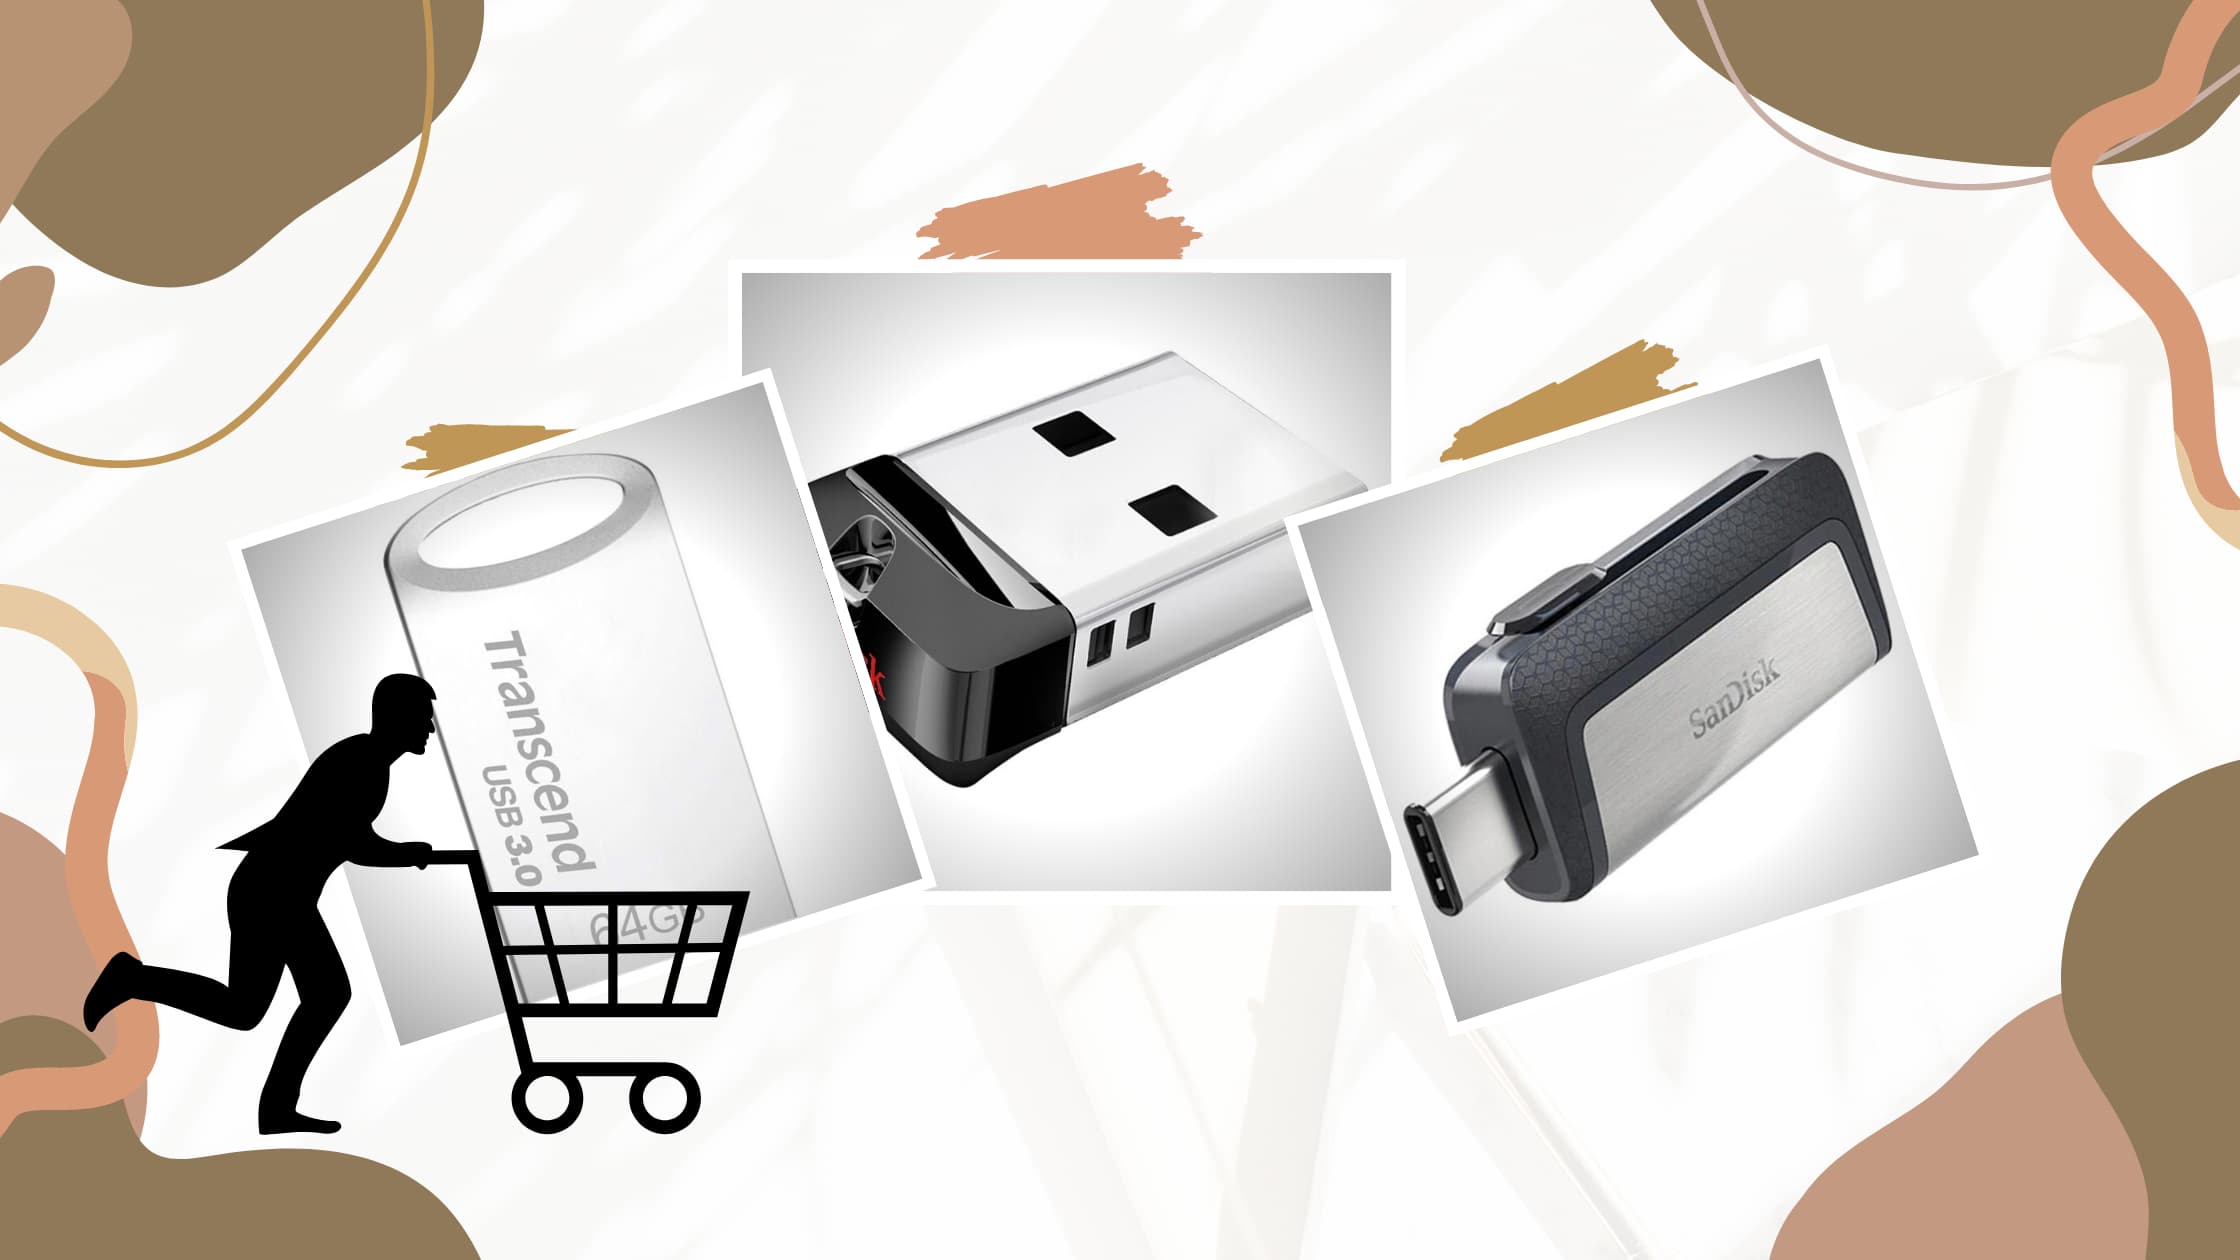 til køb af USB-stik: Hvordan vælger man et USB-flashdrev?